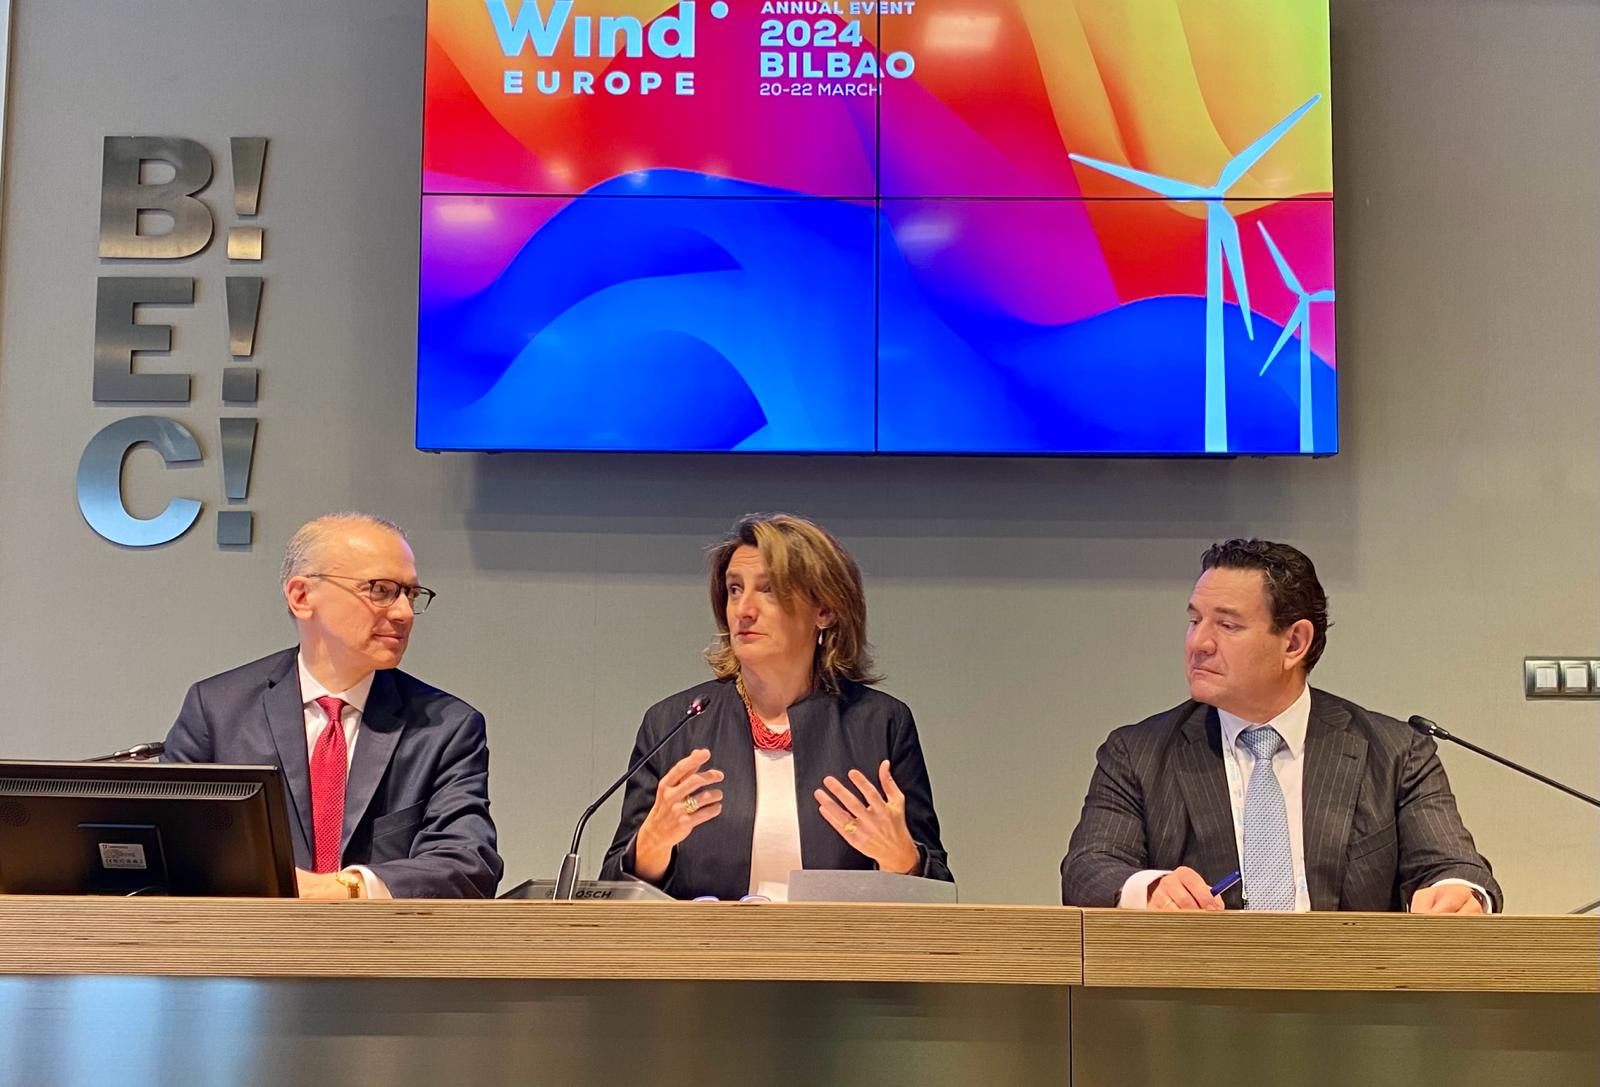 España firma el Wind Charter nacional, compromiso conjunto del sector eólico español y el Ministerio para la Transición Ecológica y el Reto Demográfico MITECO